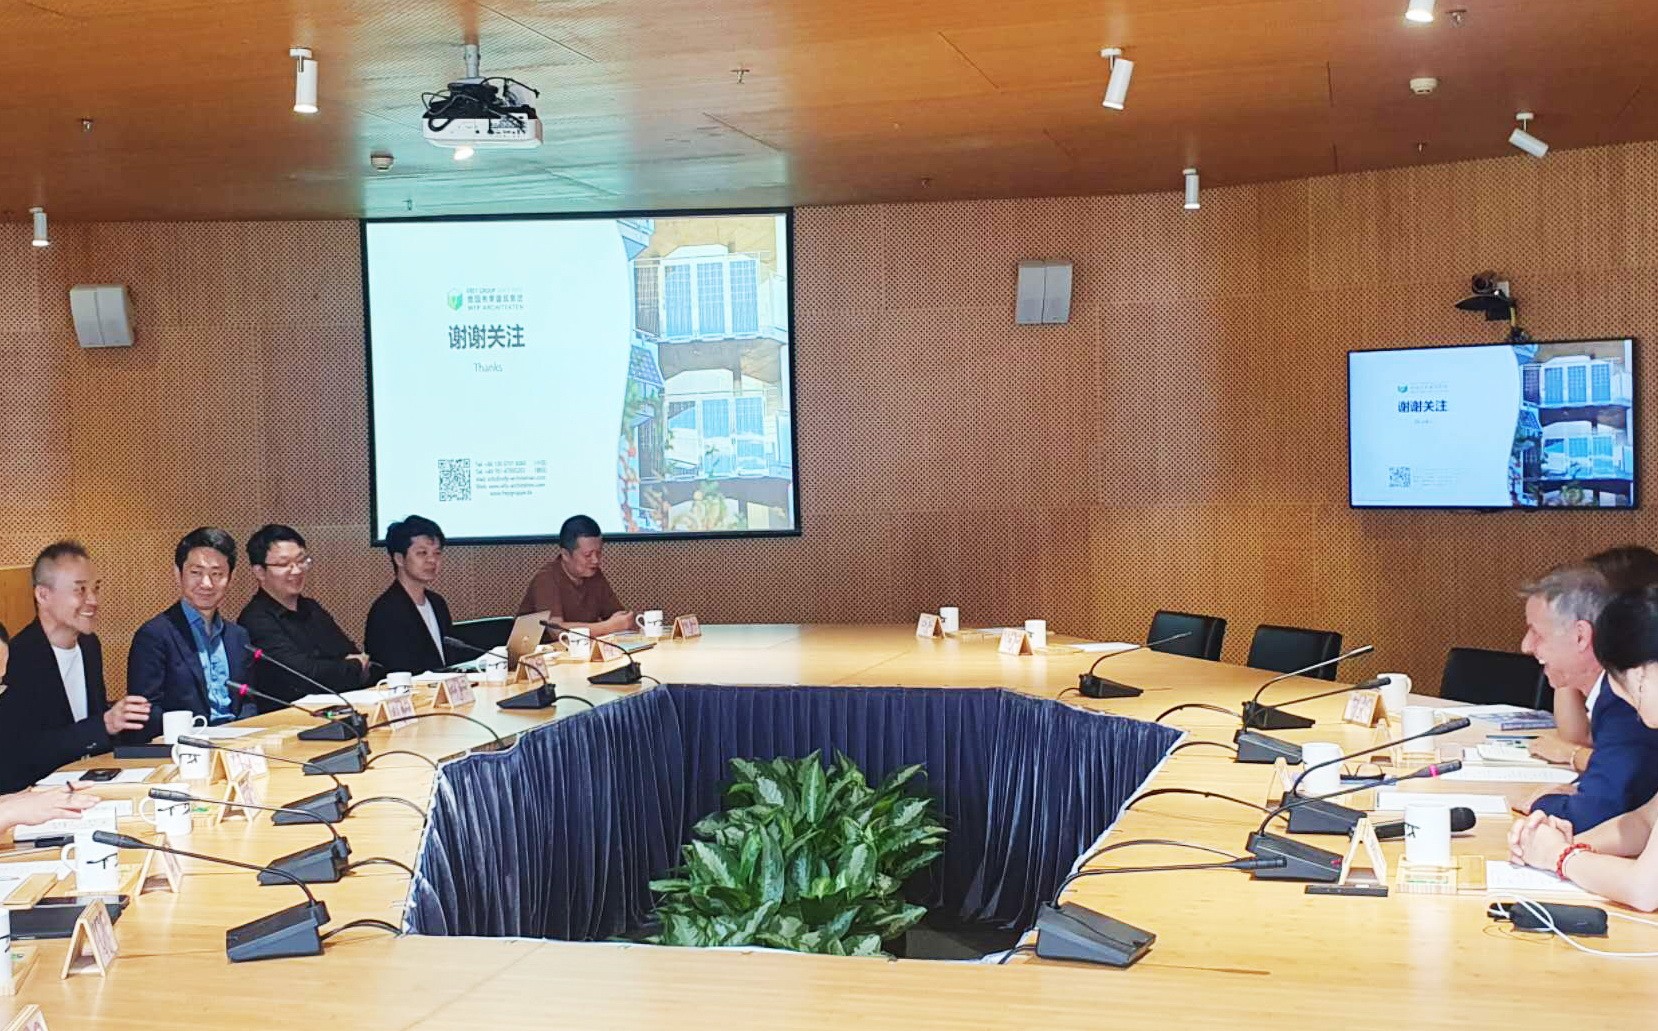 Herr Frey besuchte Shenzhen Biosphere 3 - Diskussion mit Herrn Wang Shi, Gründer der Vanke-Gruppe, ü